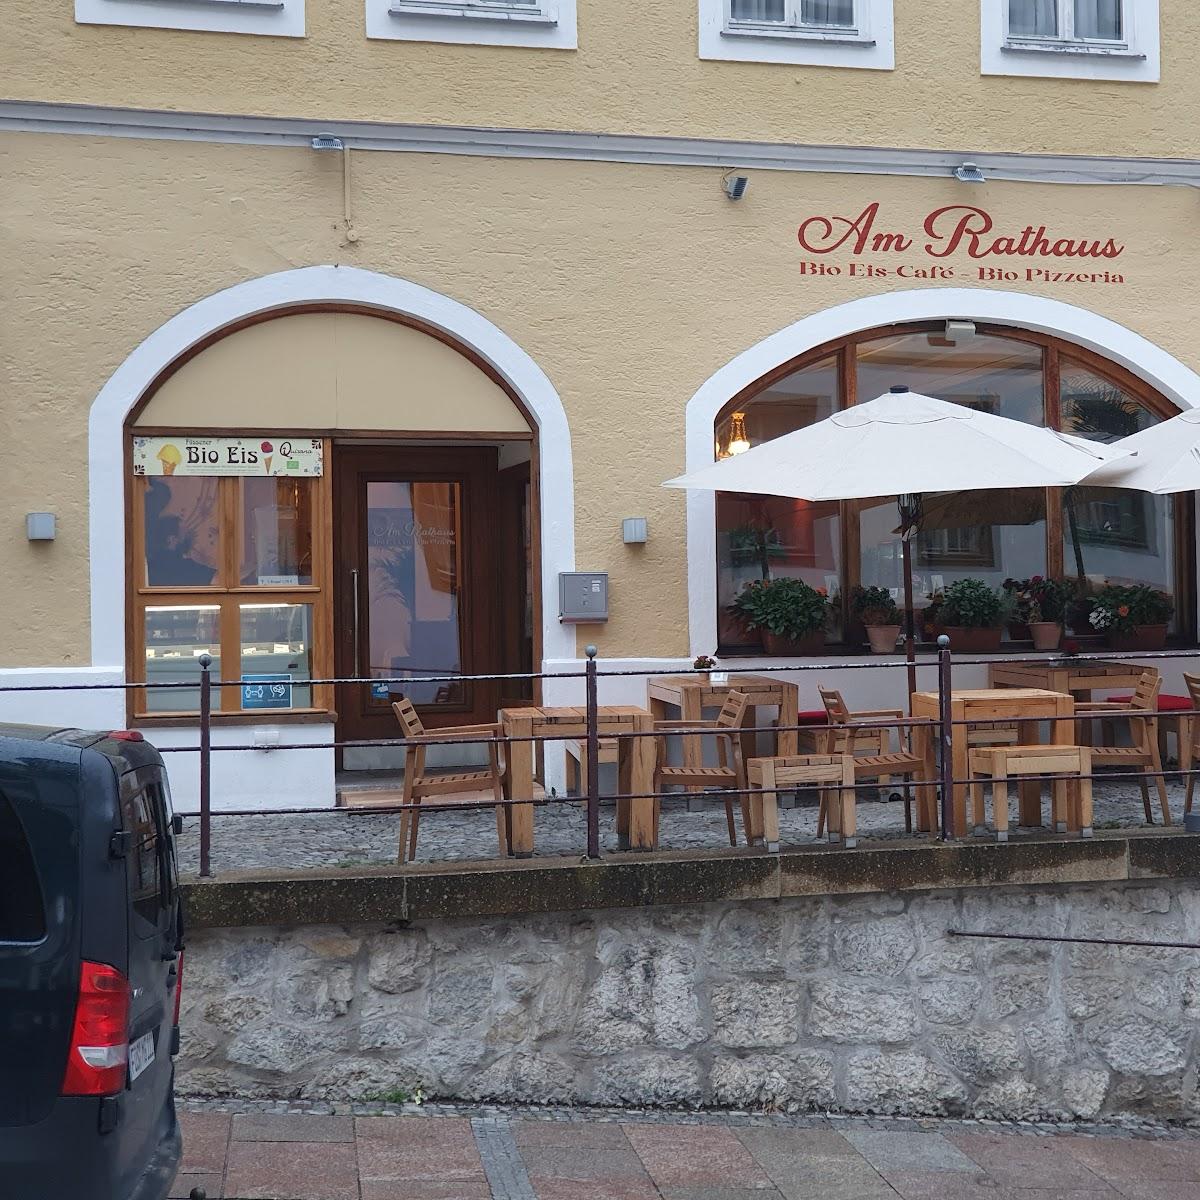 Restaurant "Am Rathaus, Bio Pizzeria - Bio Eiscafé" in Füssen